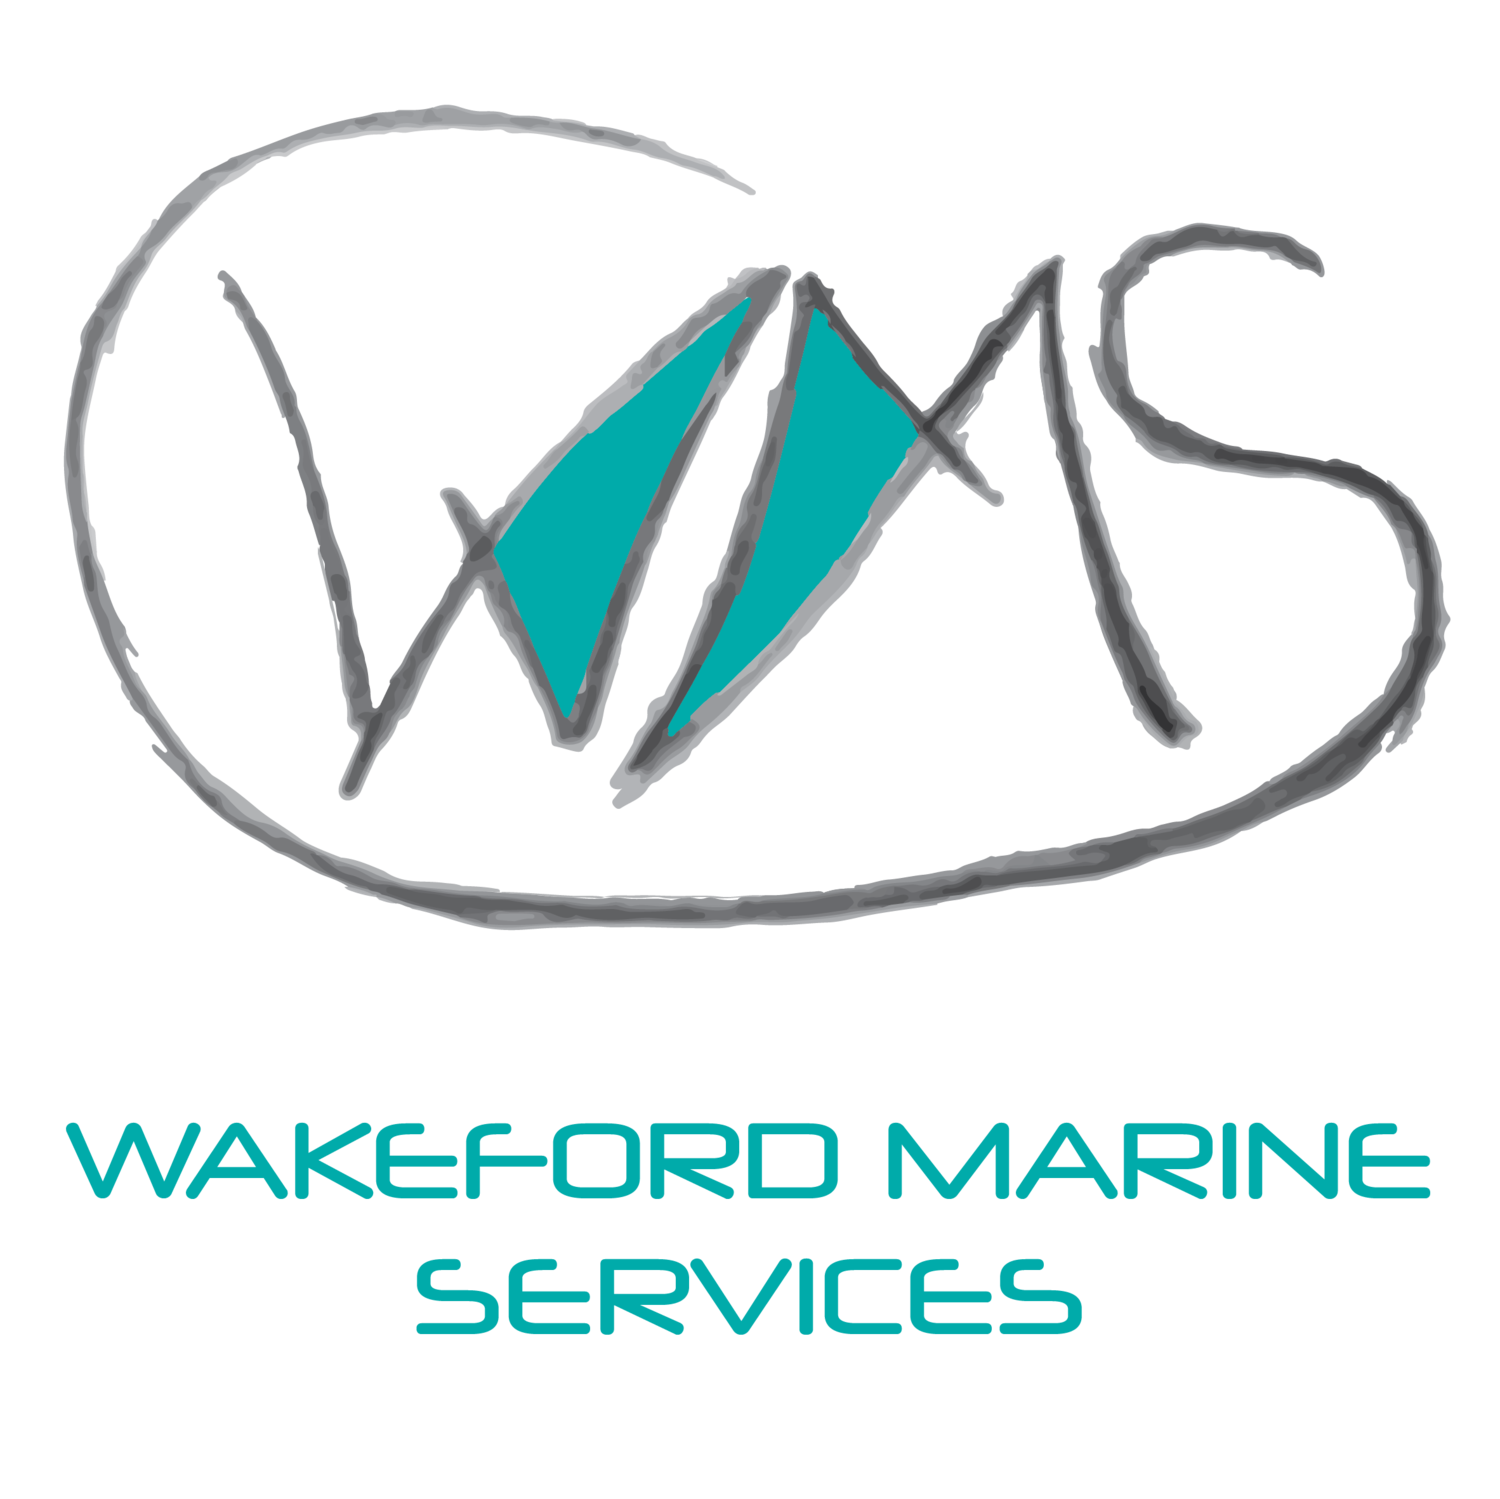 Wakeford Marine Services